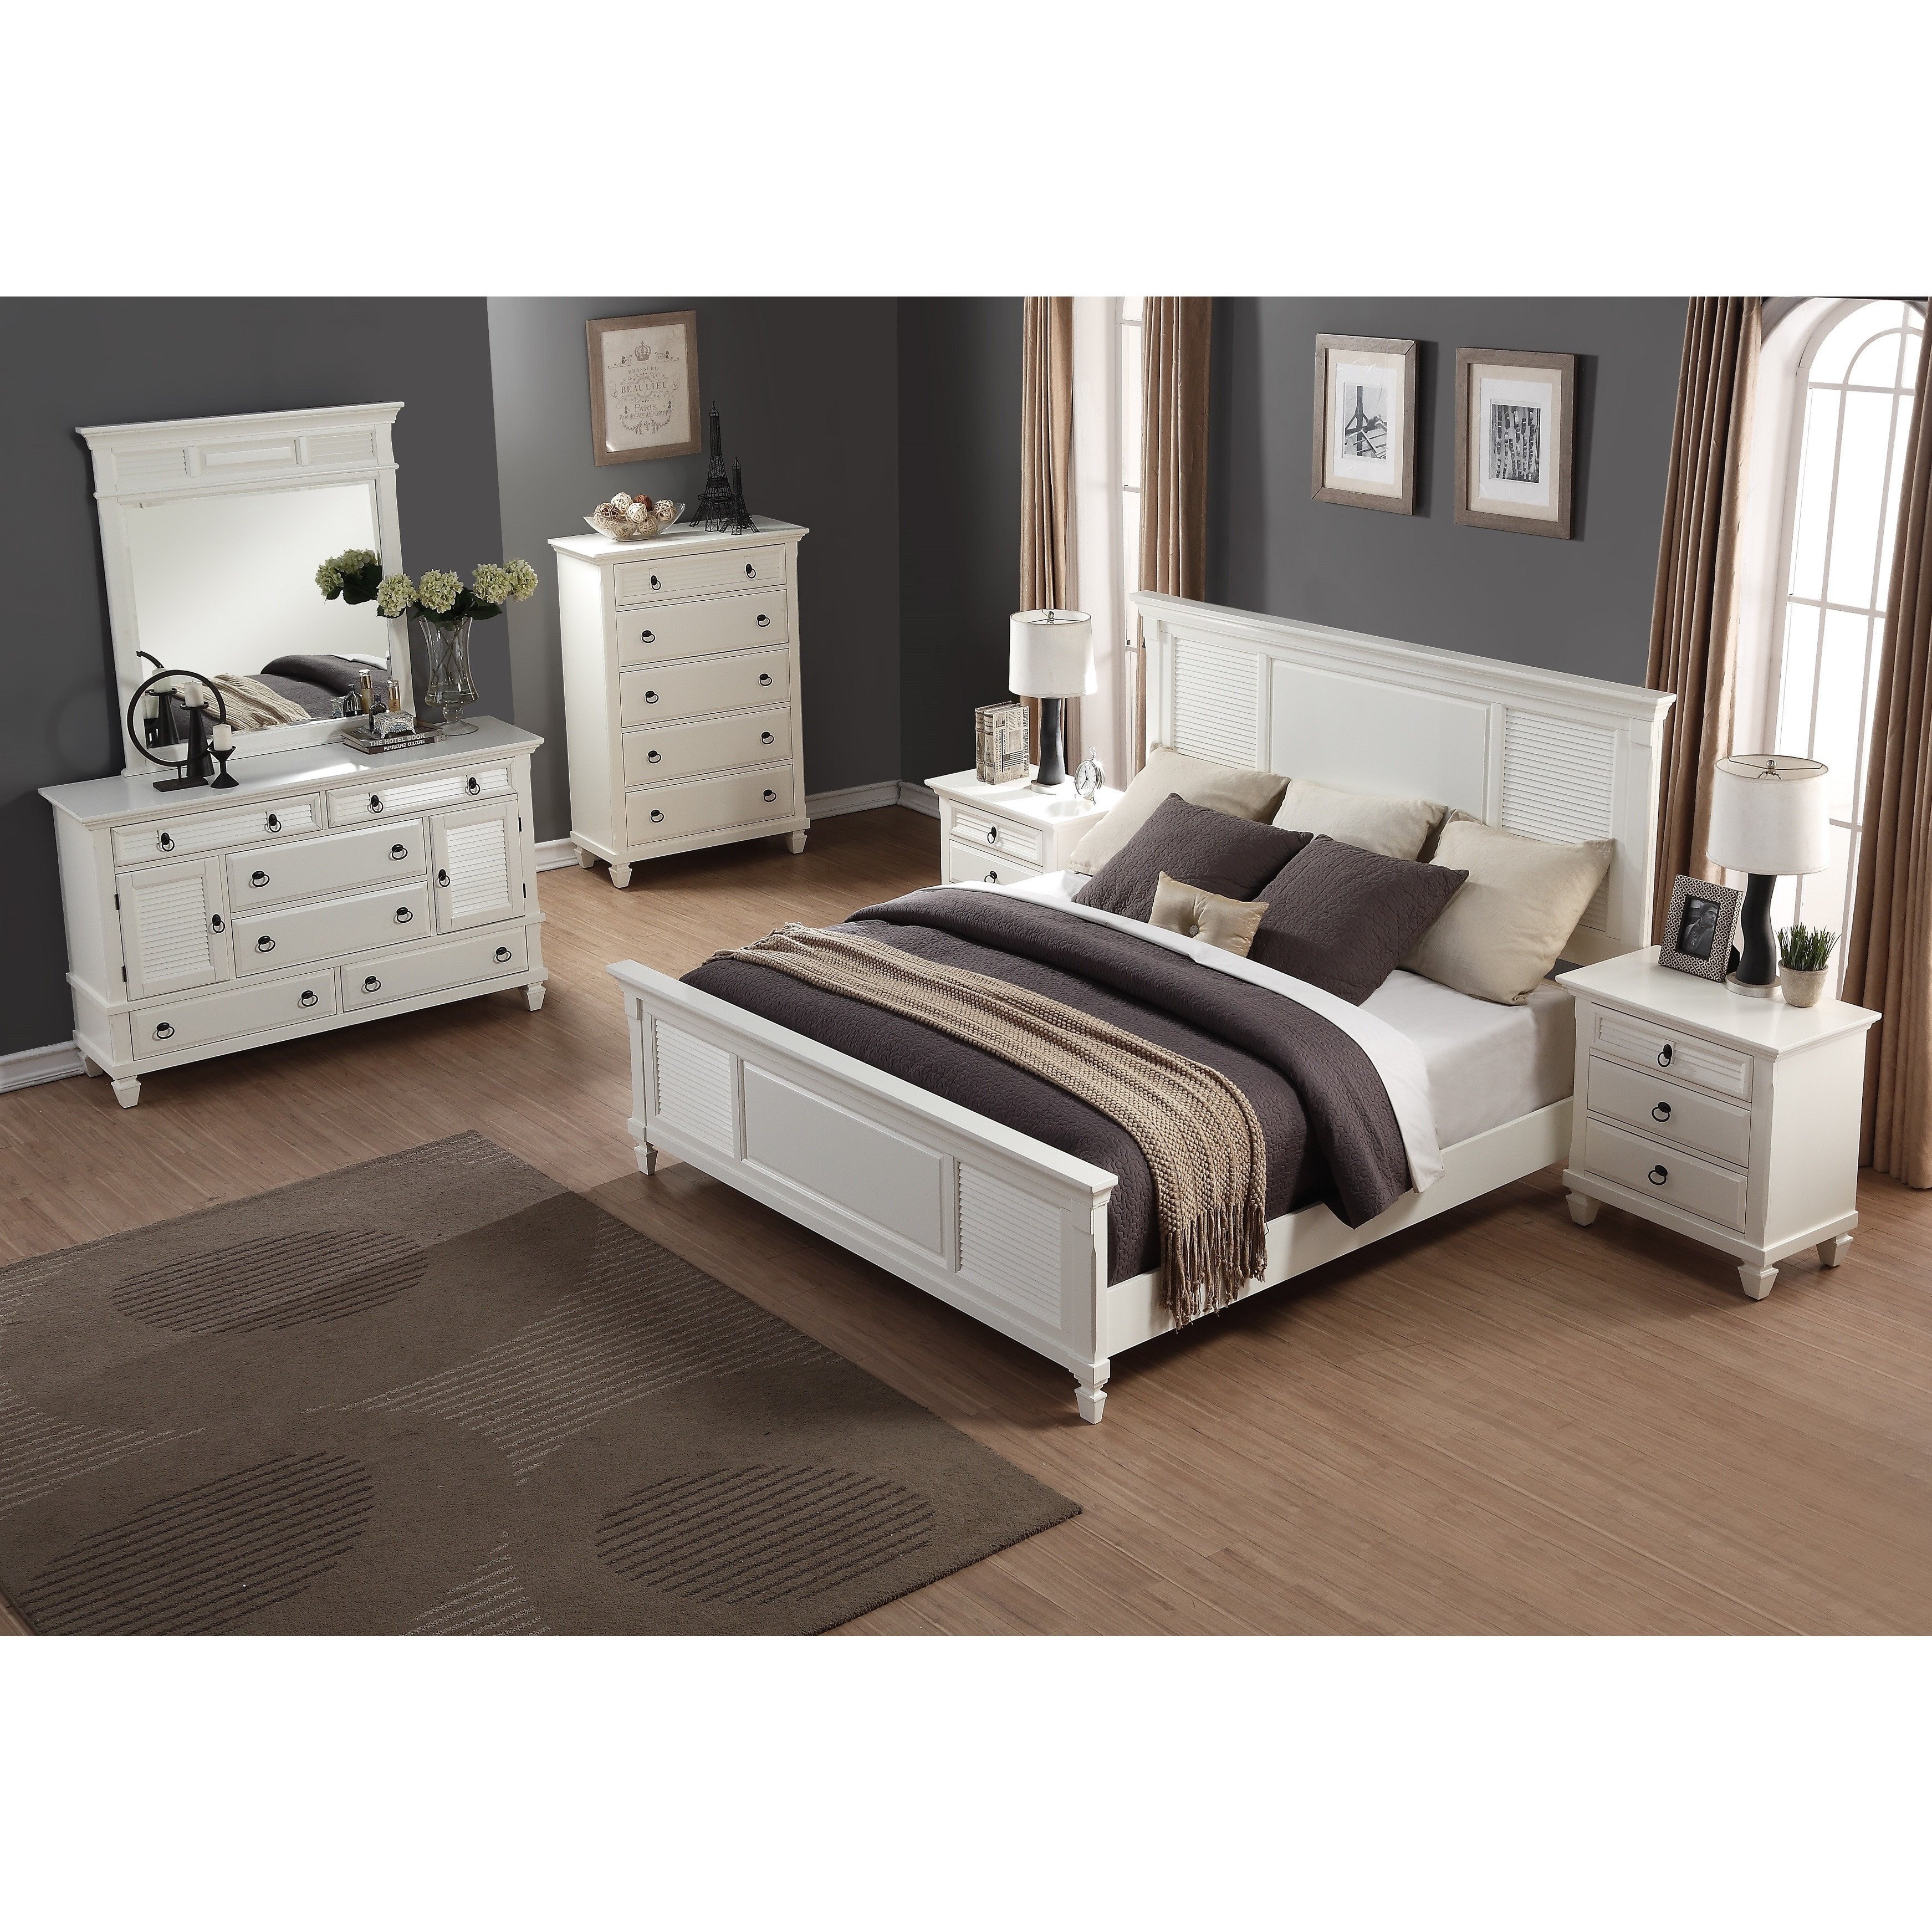 6 Piece Queen Bedroom Set Luxury Regitina White 6 Piece Queen Size Bedroom Furniture Set